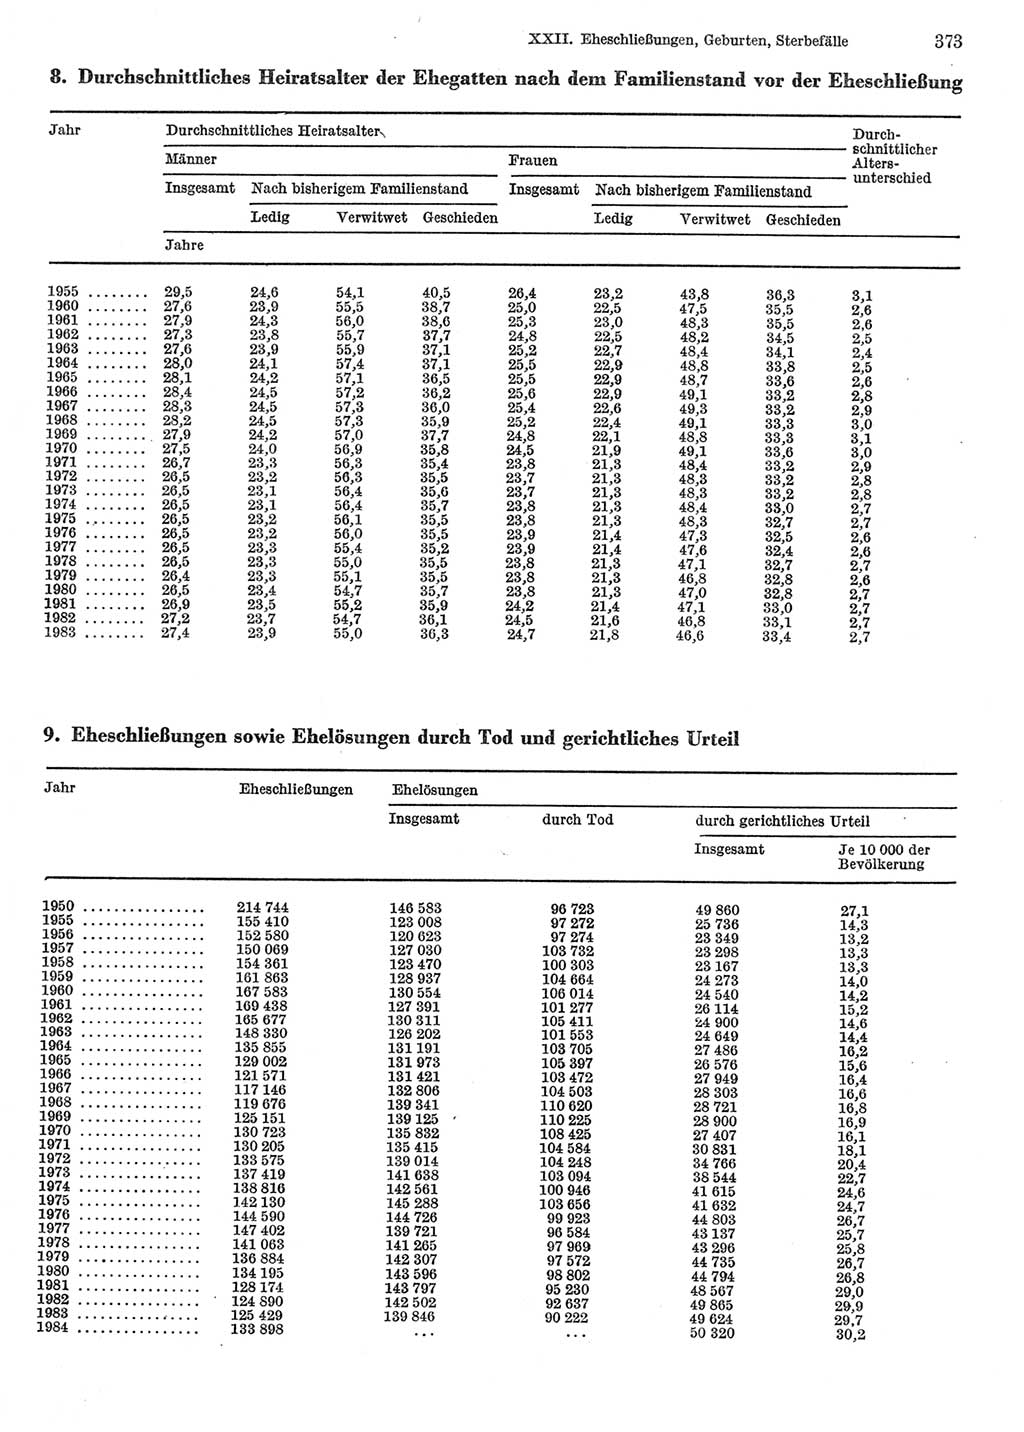 Statistisches Jahrbuch der Deutschen Demokratischen Republik (DDR) 1985, Seite 373 (Stat. Jb. DDR 1985, S. 373)